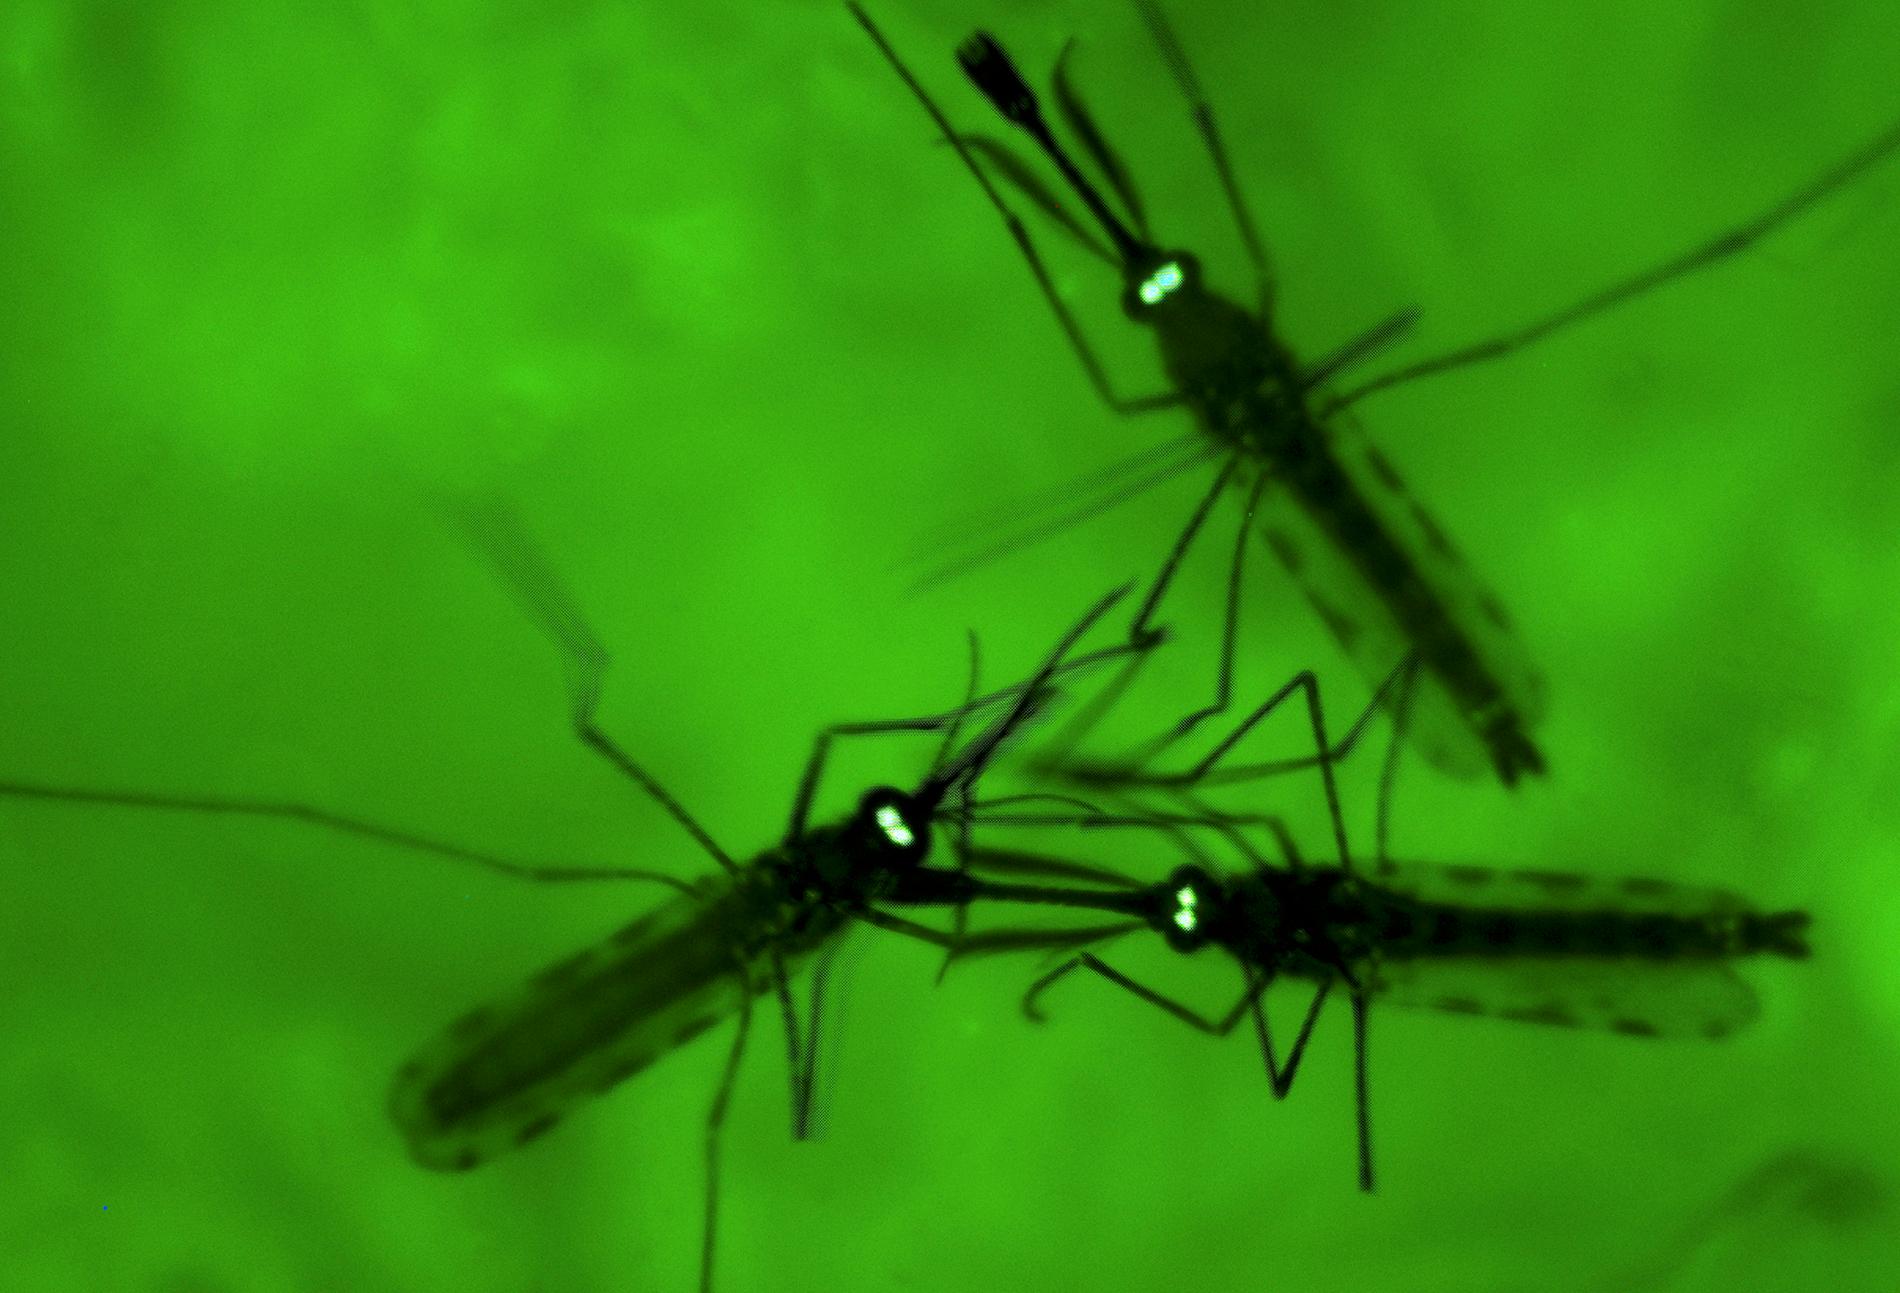 Resistenta varianter av malariaparasiten, som sprids via myggor, blir vanligare i Afrika. Arkivbild.